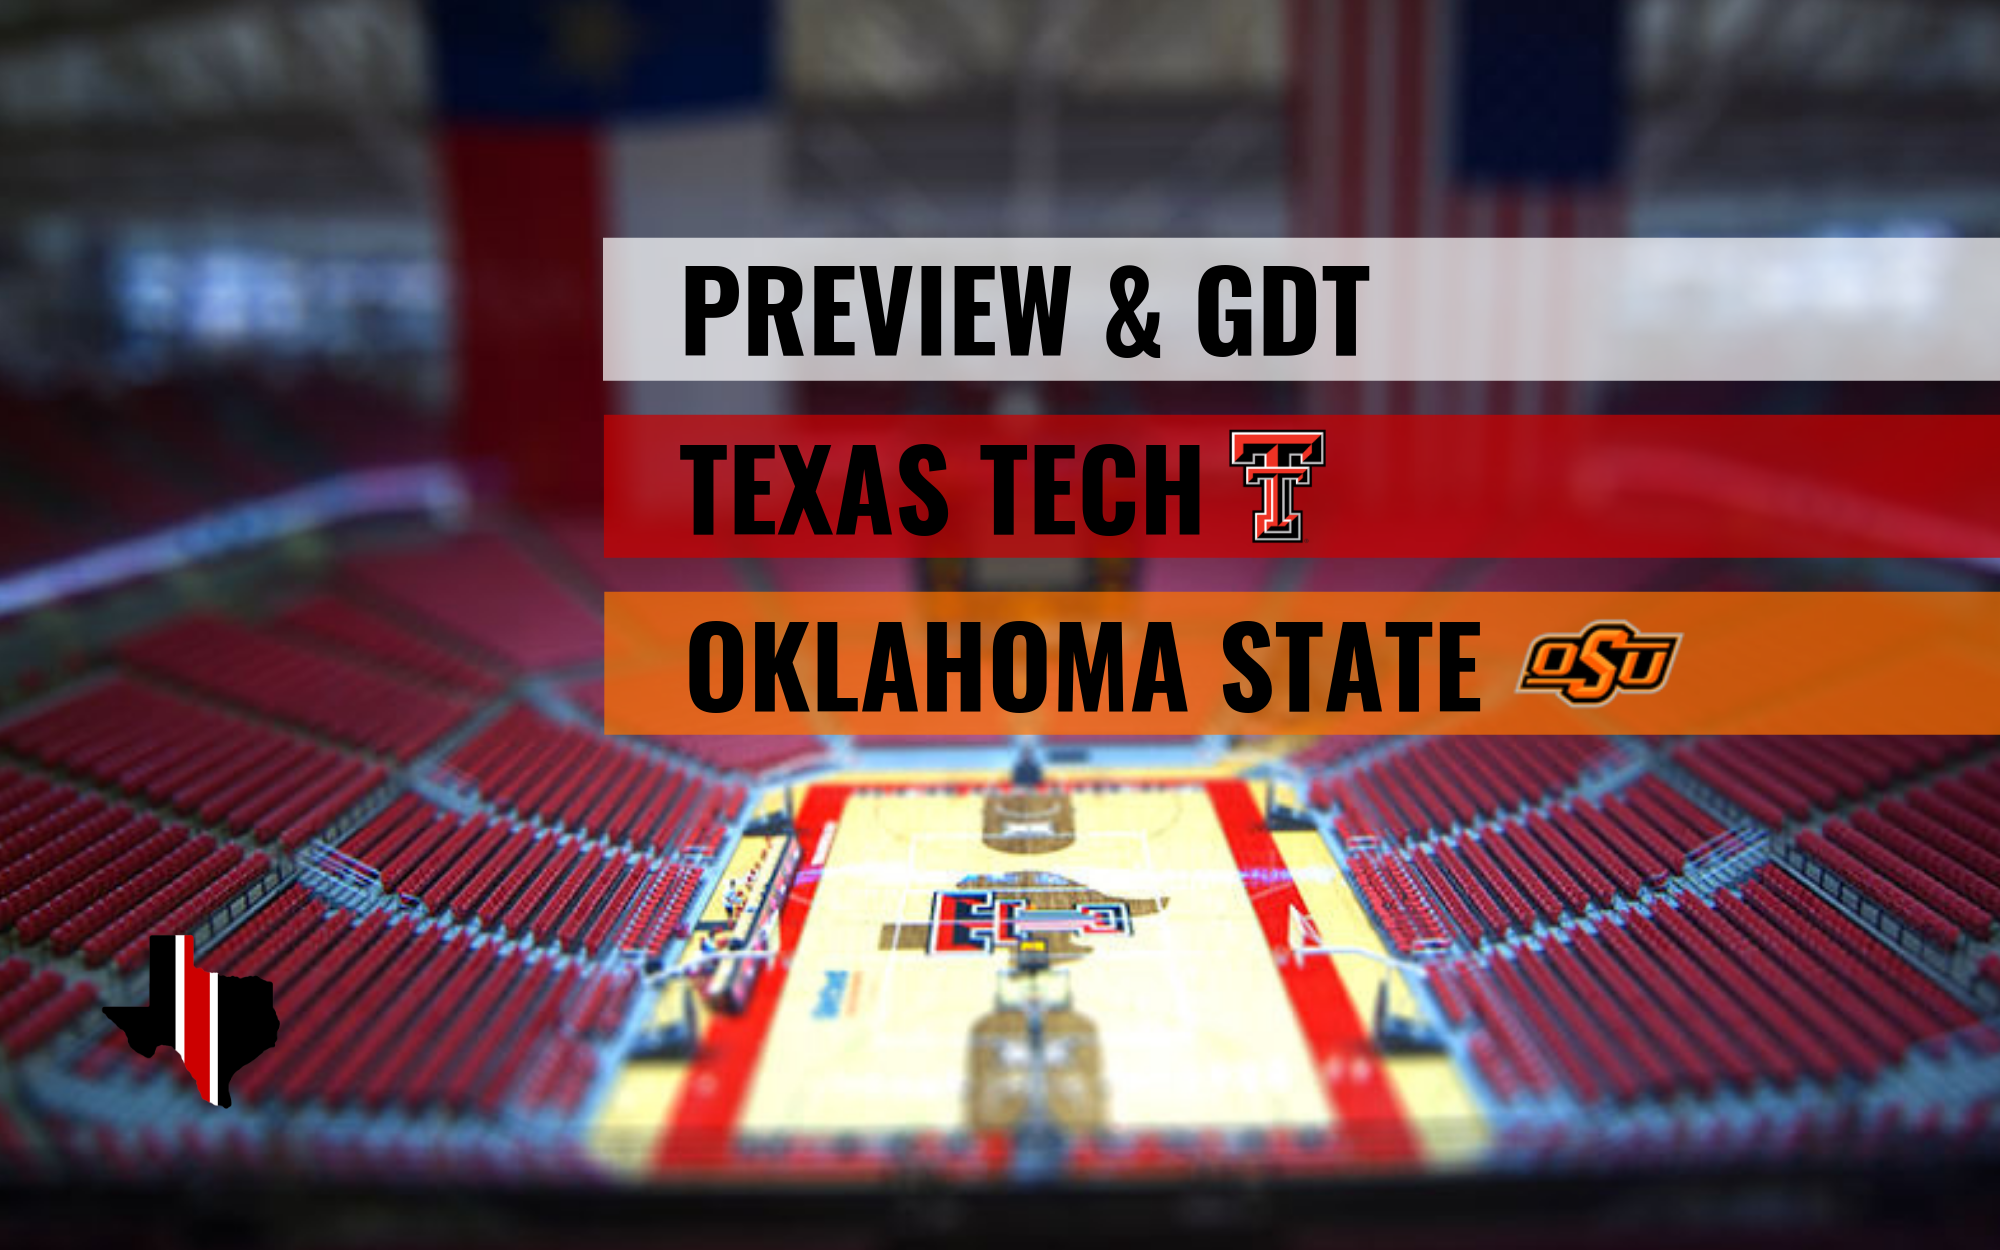 Preview & GDT: Texas Tech vs. Oklahoma State